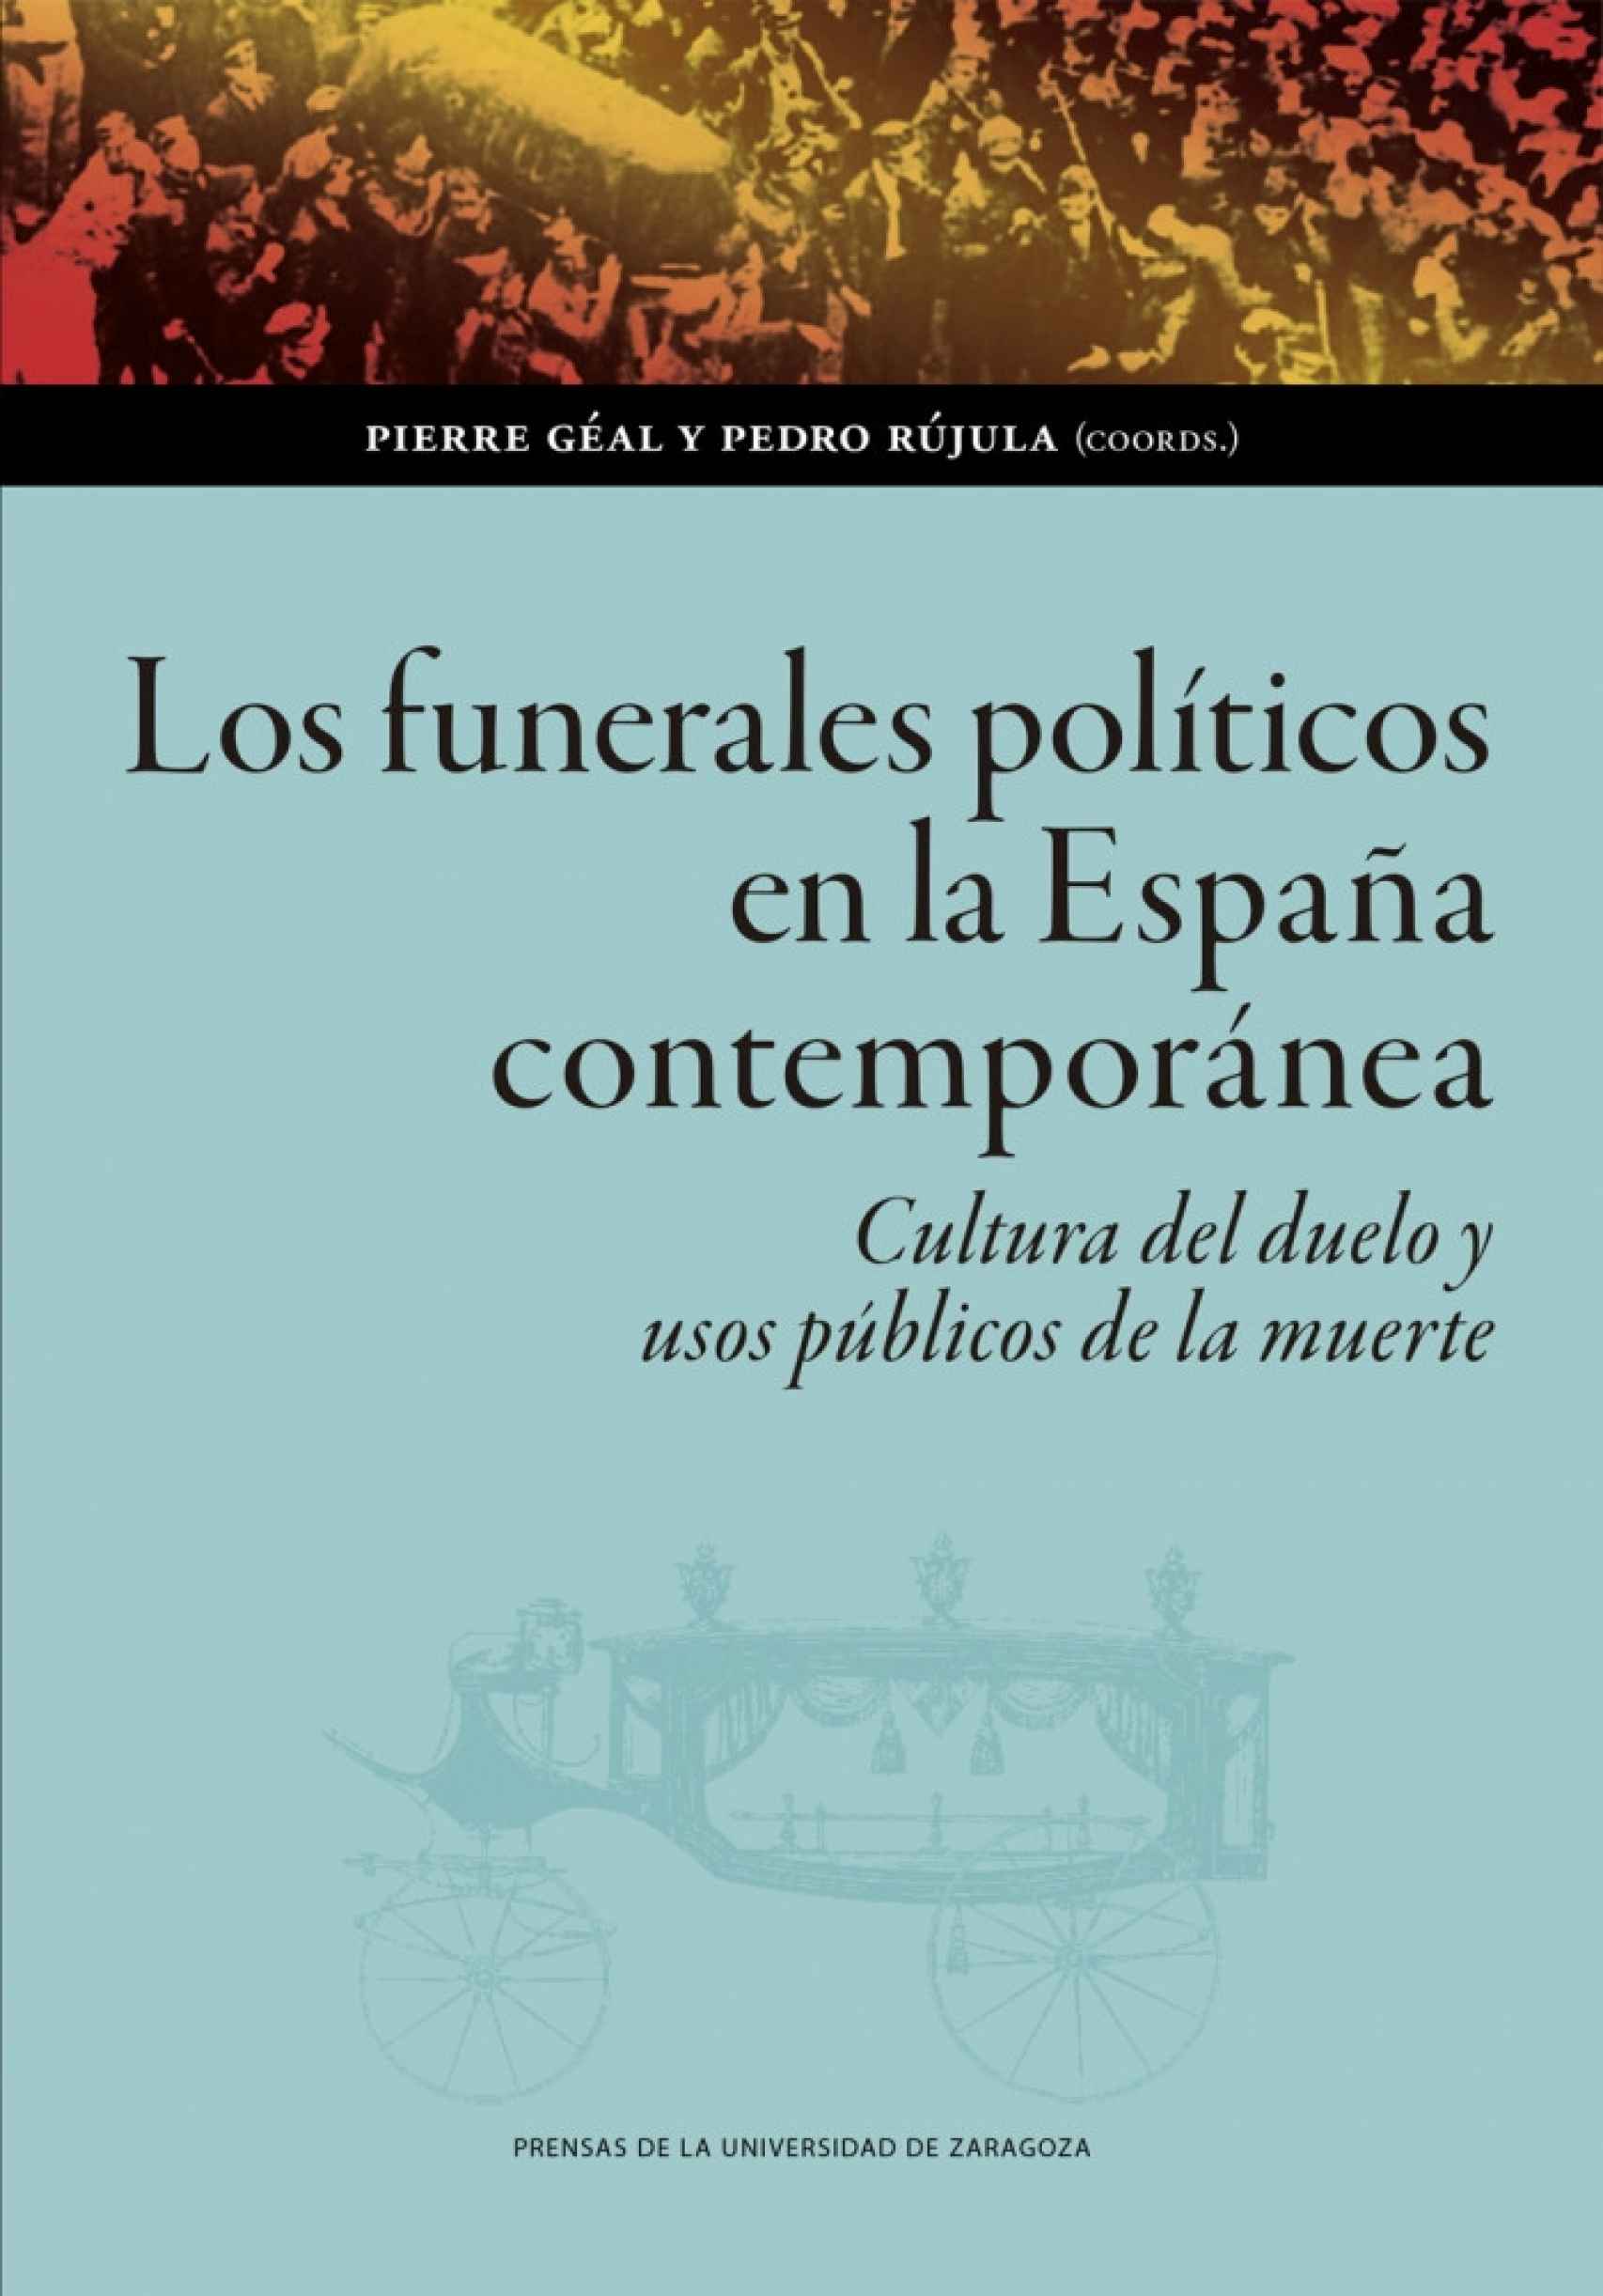 22 los-funerales-politicos-en-la-espana-contemporanea-cultura-del-duelo-y-usos-publicos-de-la-muerte